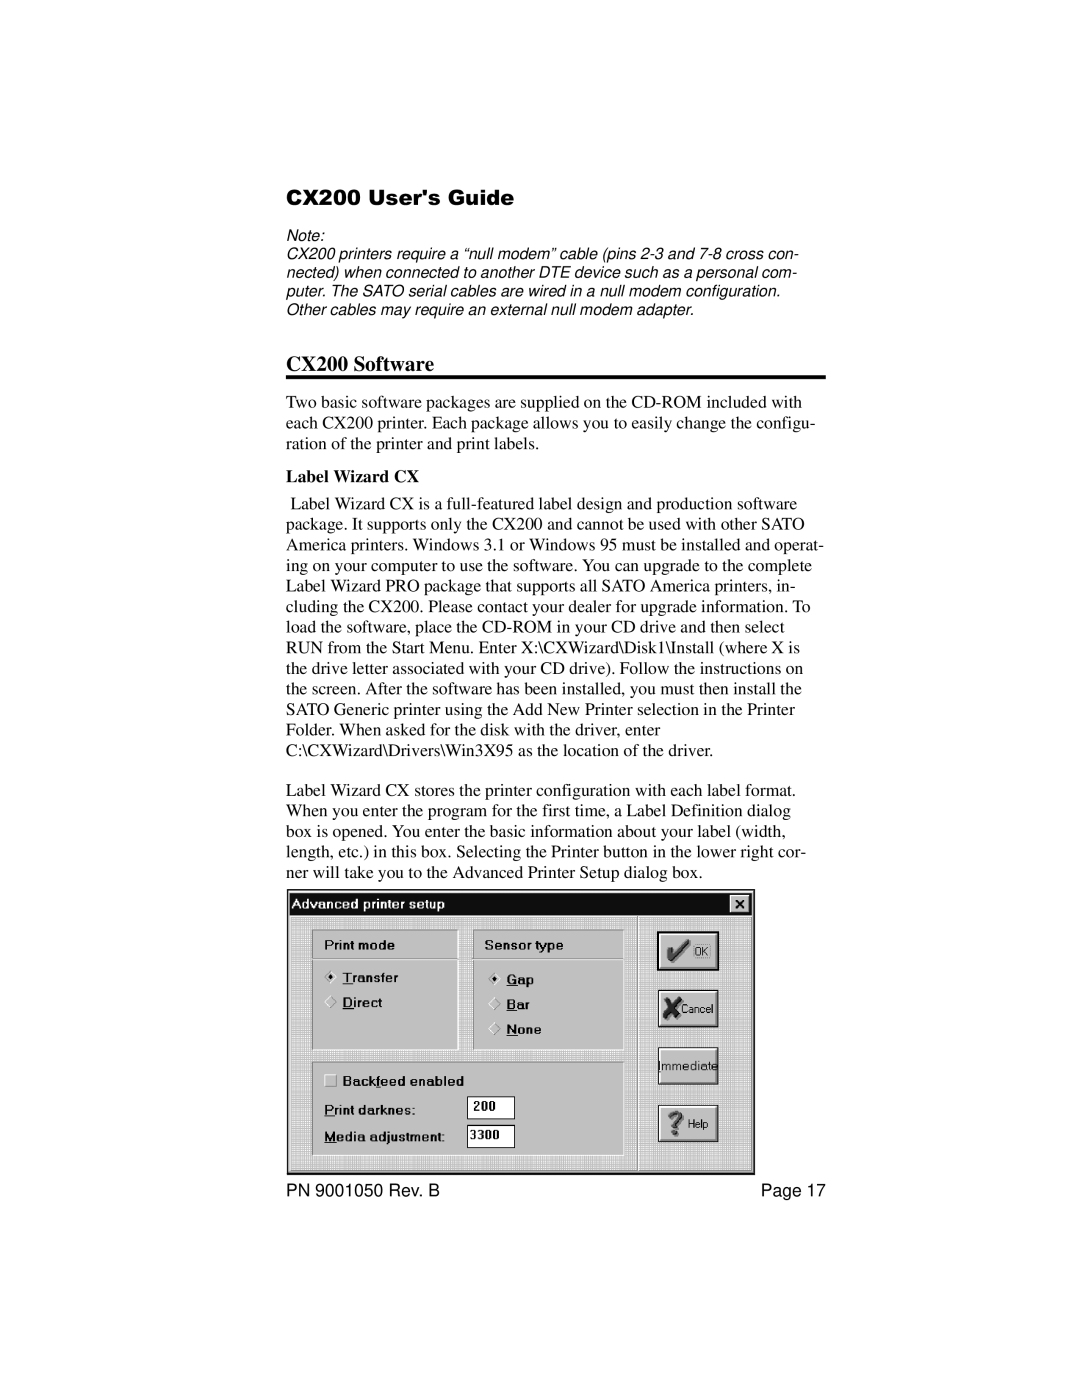 SATO manual CX200 Software, Label Wizard CX, CX200 Users Guide 